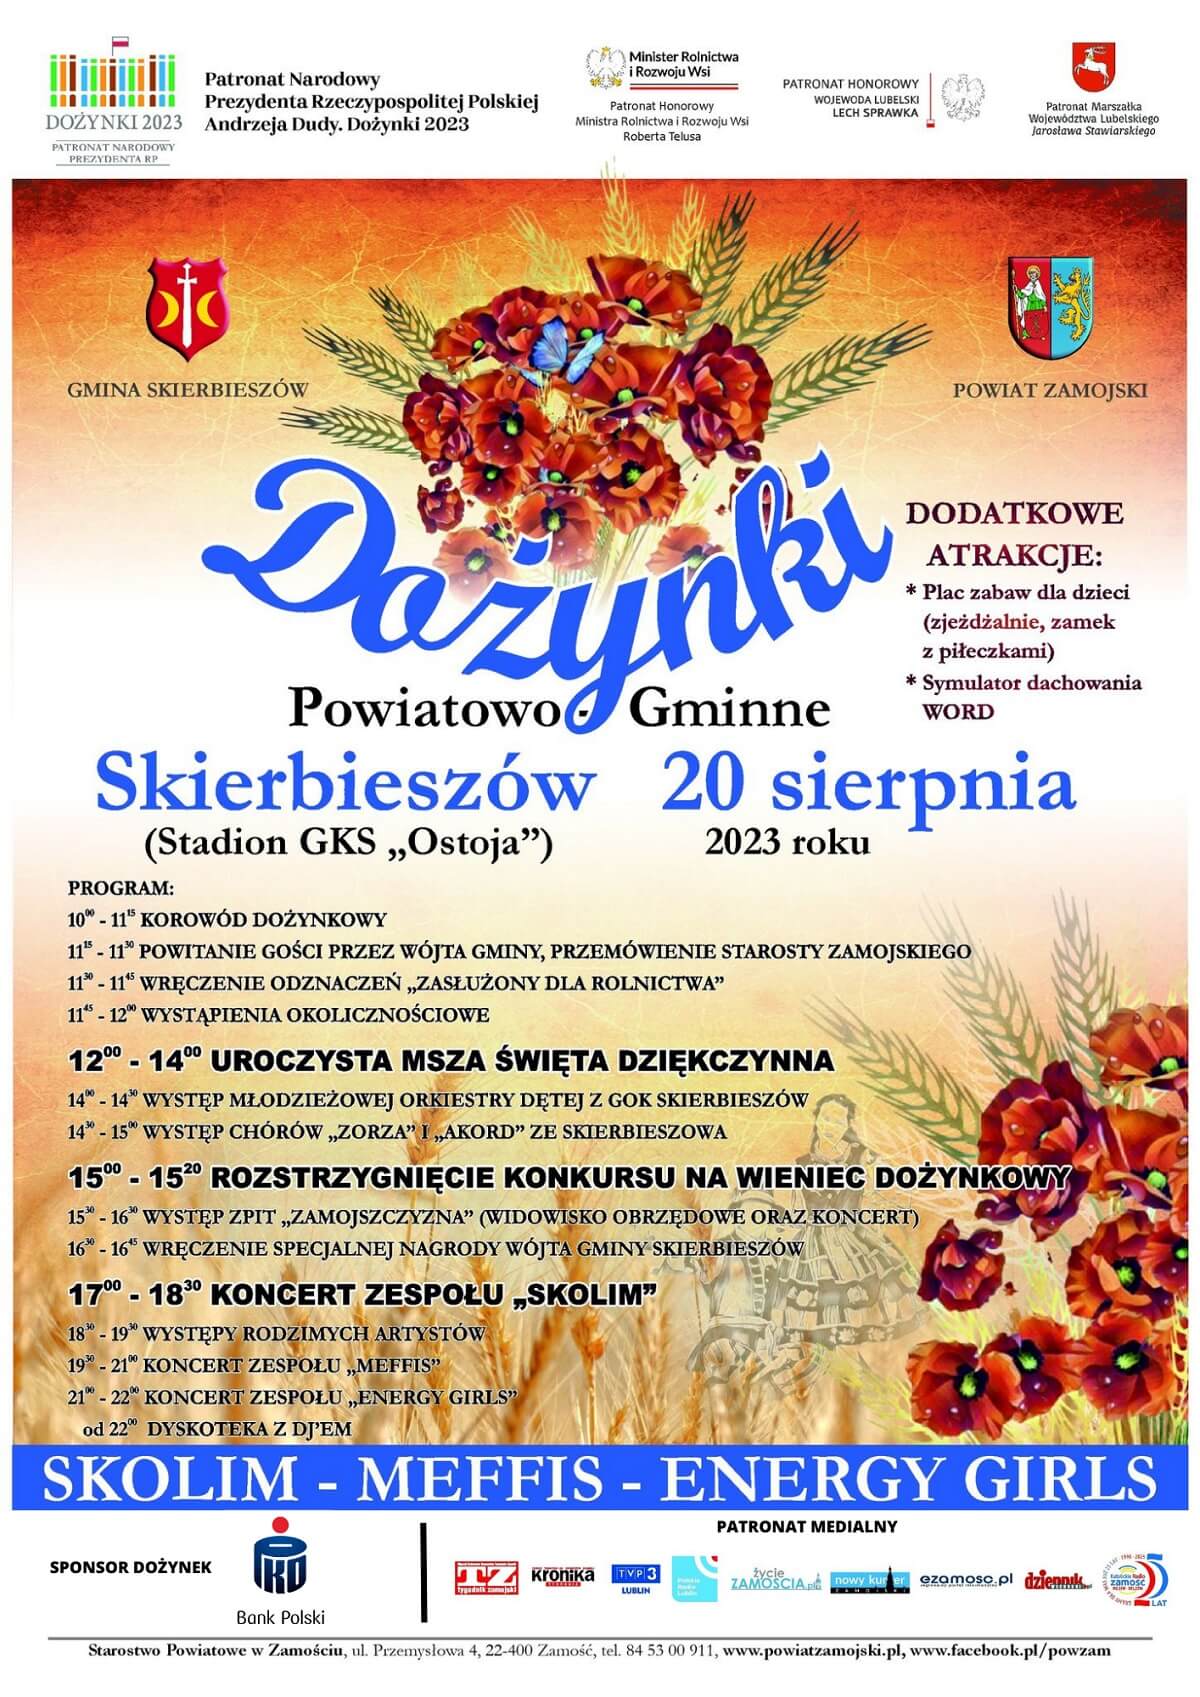 Dożynki Powiatu Zamojskiego w Skierbieszowie 2023 - plakat, program wydarzenia